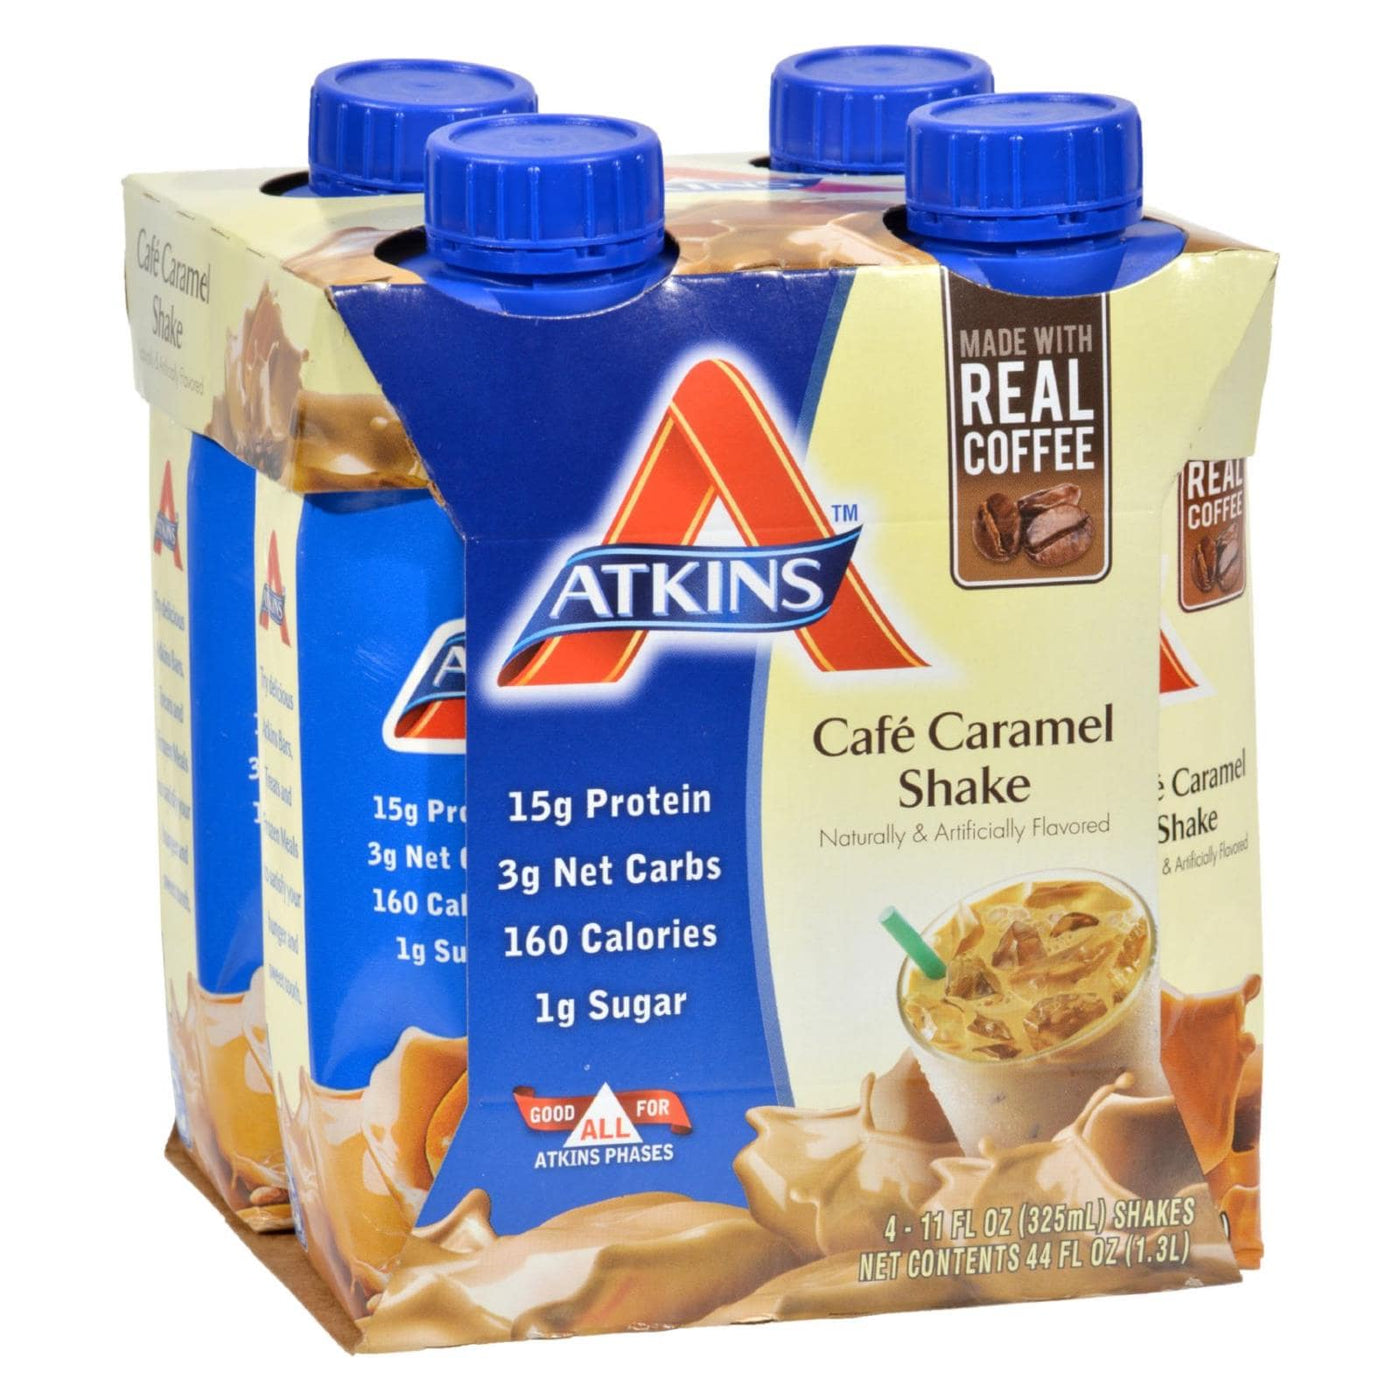 Atkins Advantage Rtd Shake Cafe Caramel - 11 Fl Oz Each - Pack Of 4 | OnlyNaturals.us